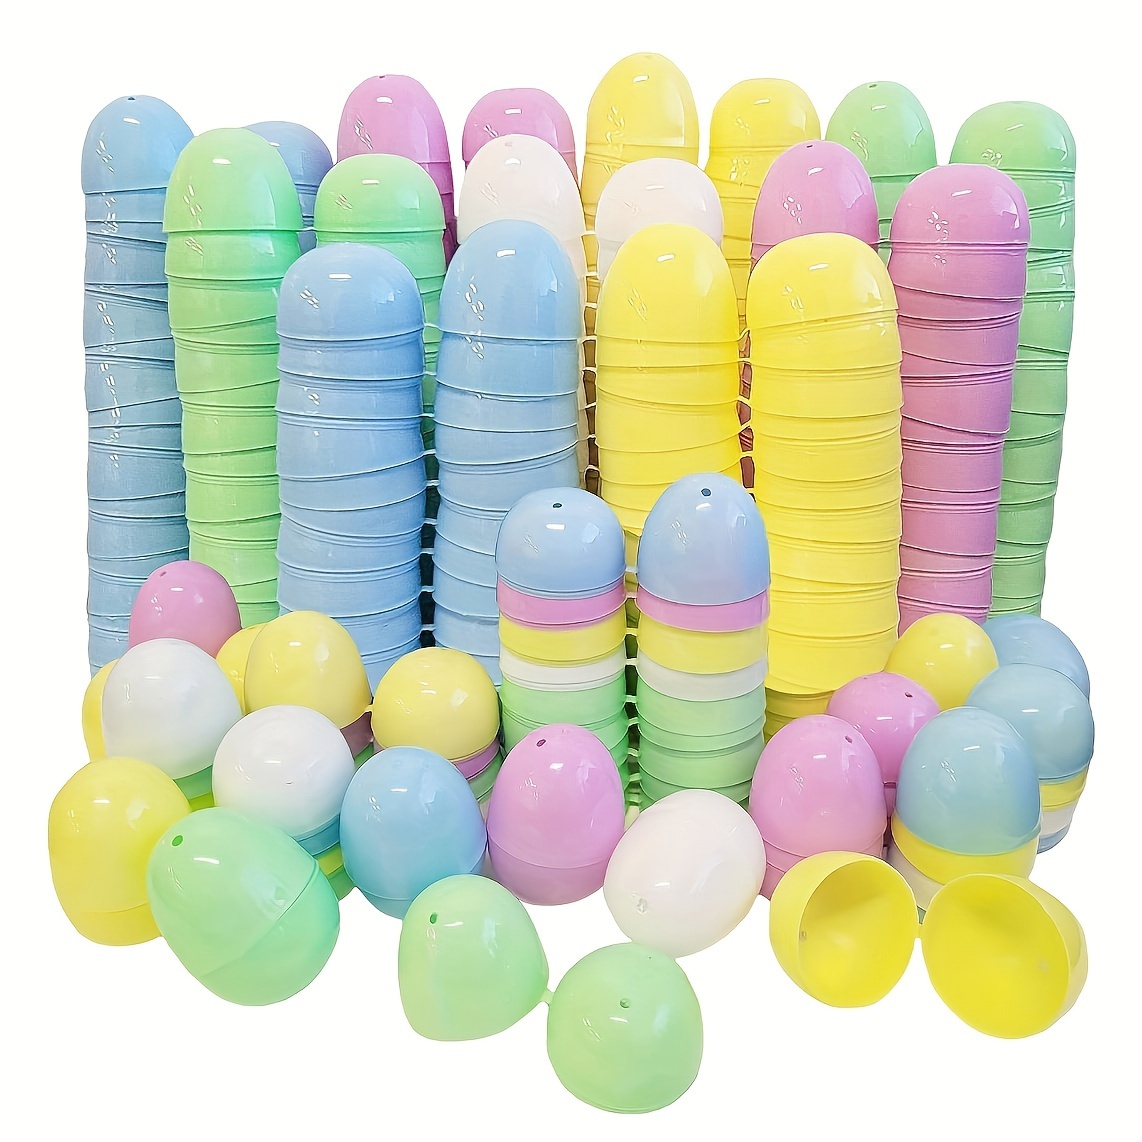 12x Uova di Pasqua Contenitore Vuoto in plastica colorata da Riempire Uovo  h. 11 cm diametro 8,5 cm - Party 2 